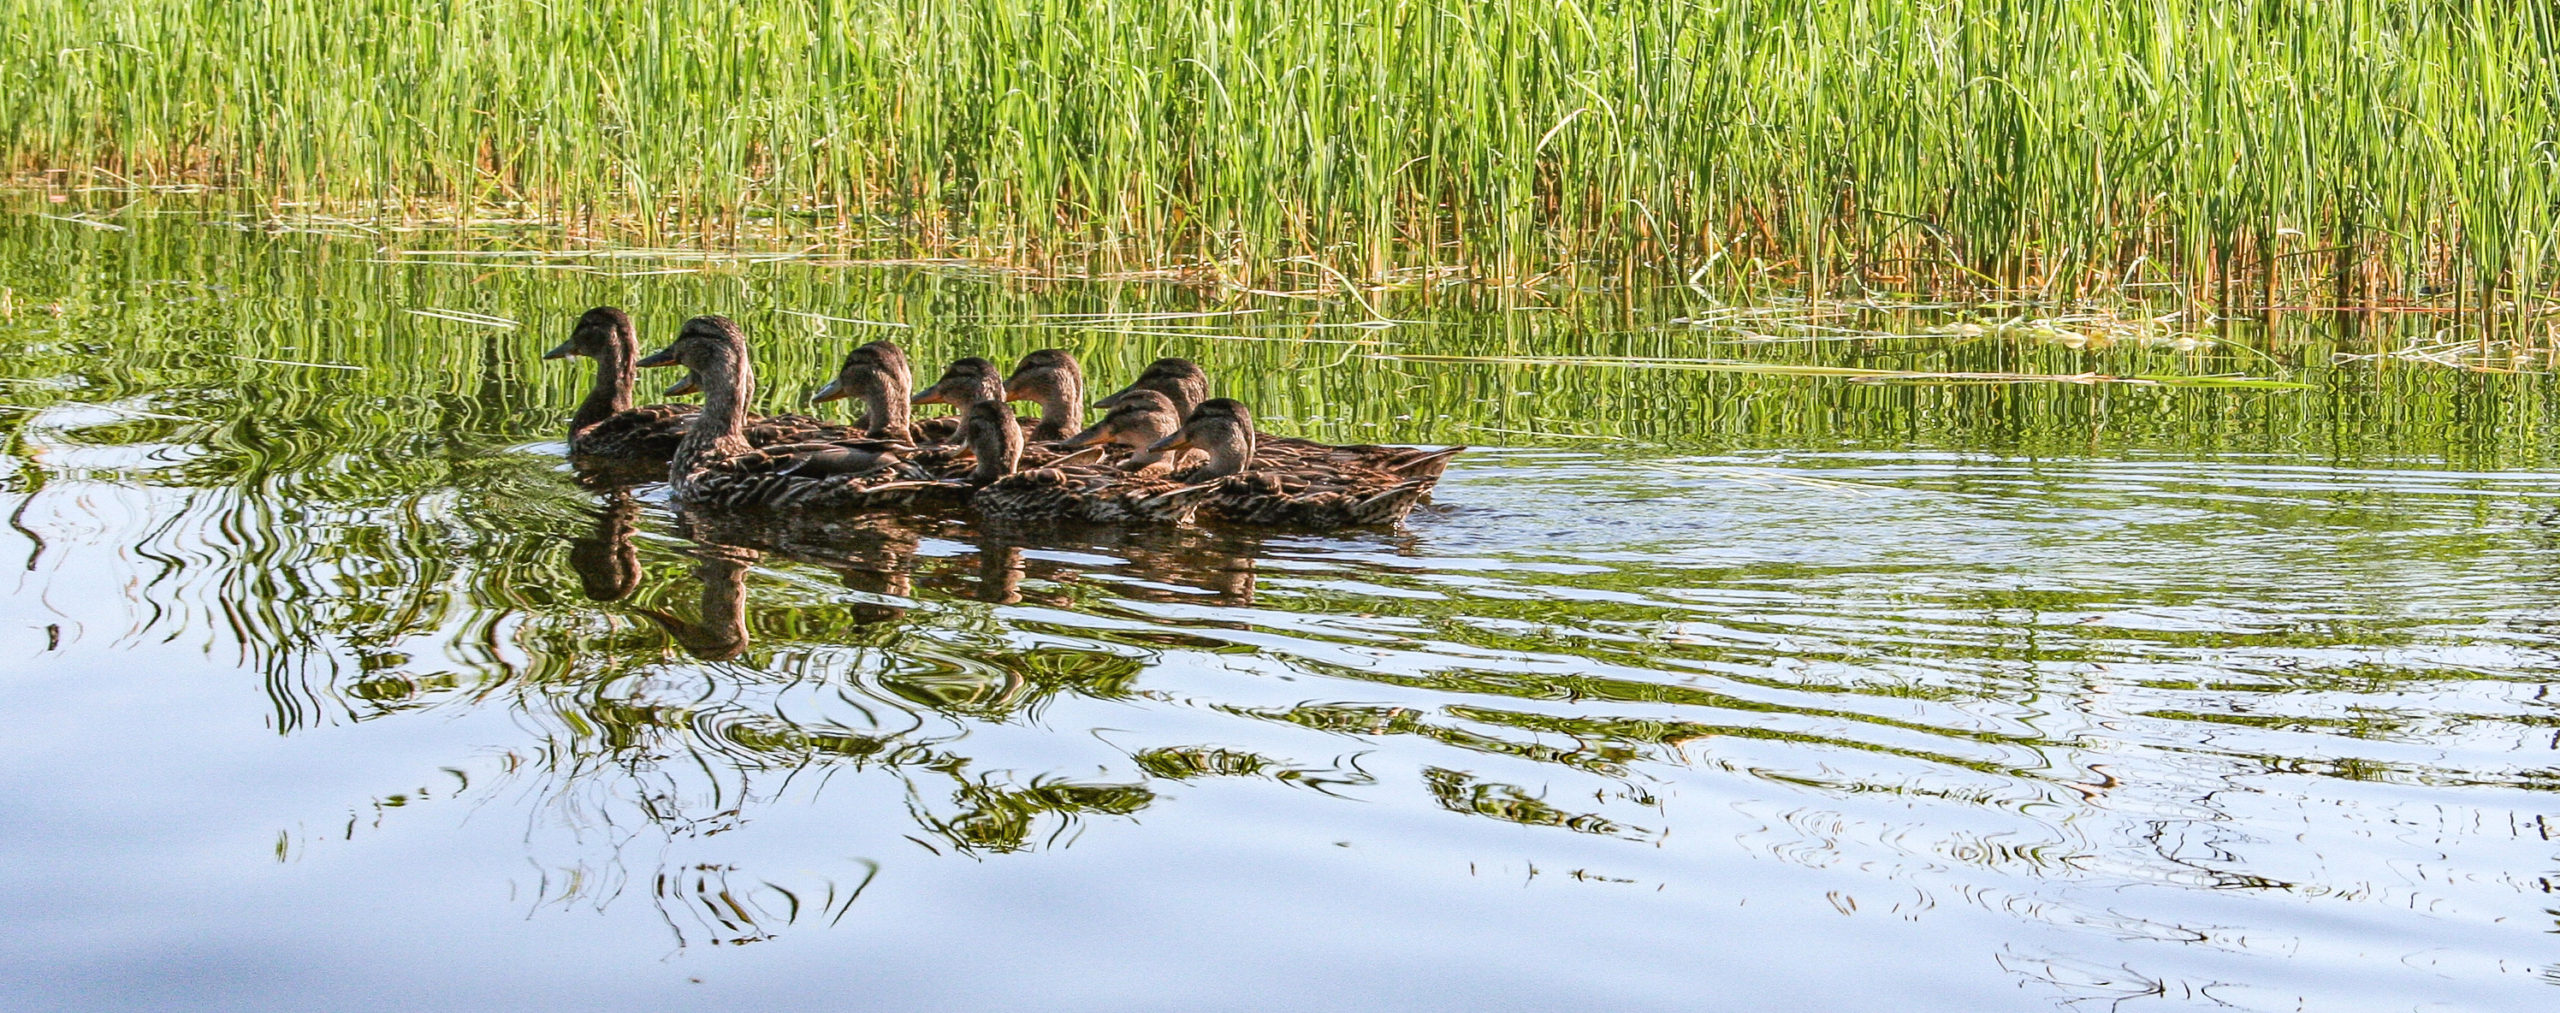 Mottled Ducks Réserve naturelle Quilliams-Durrell